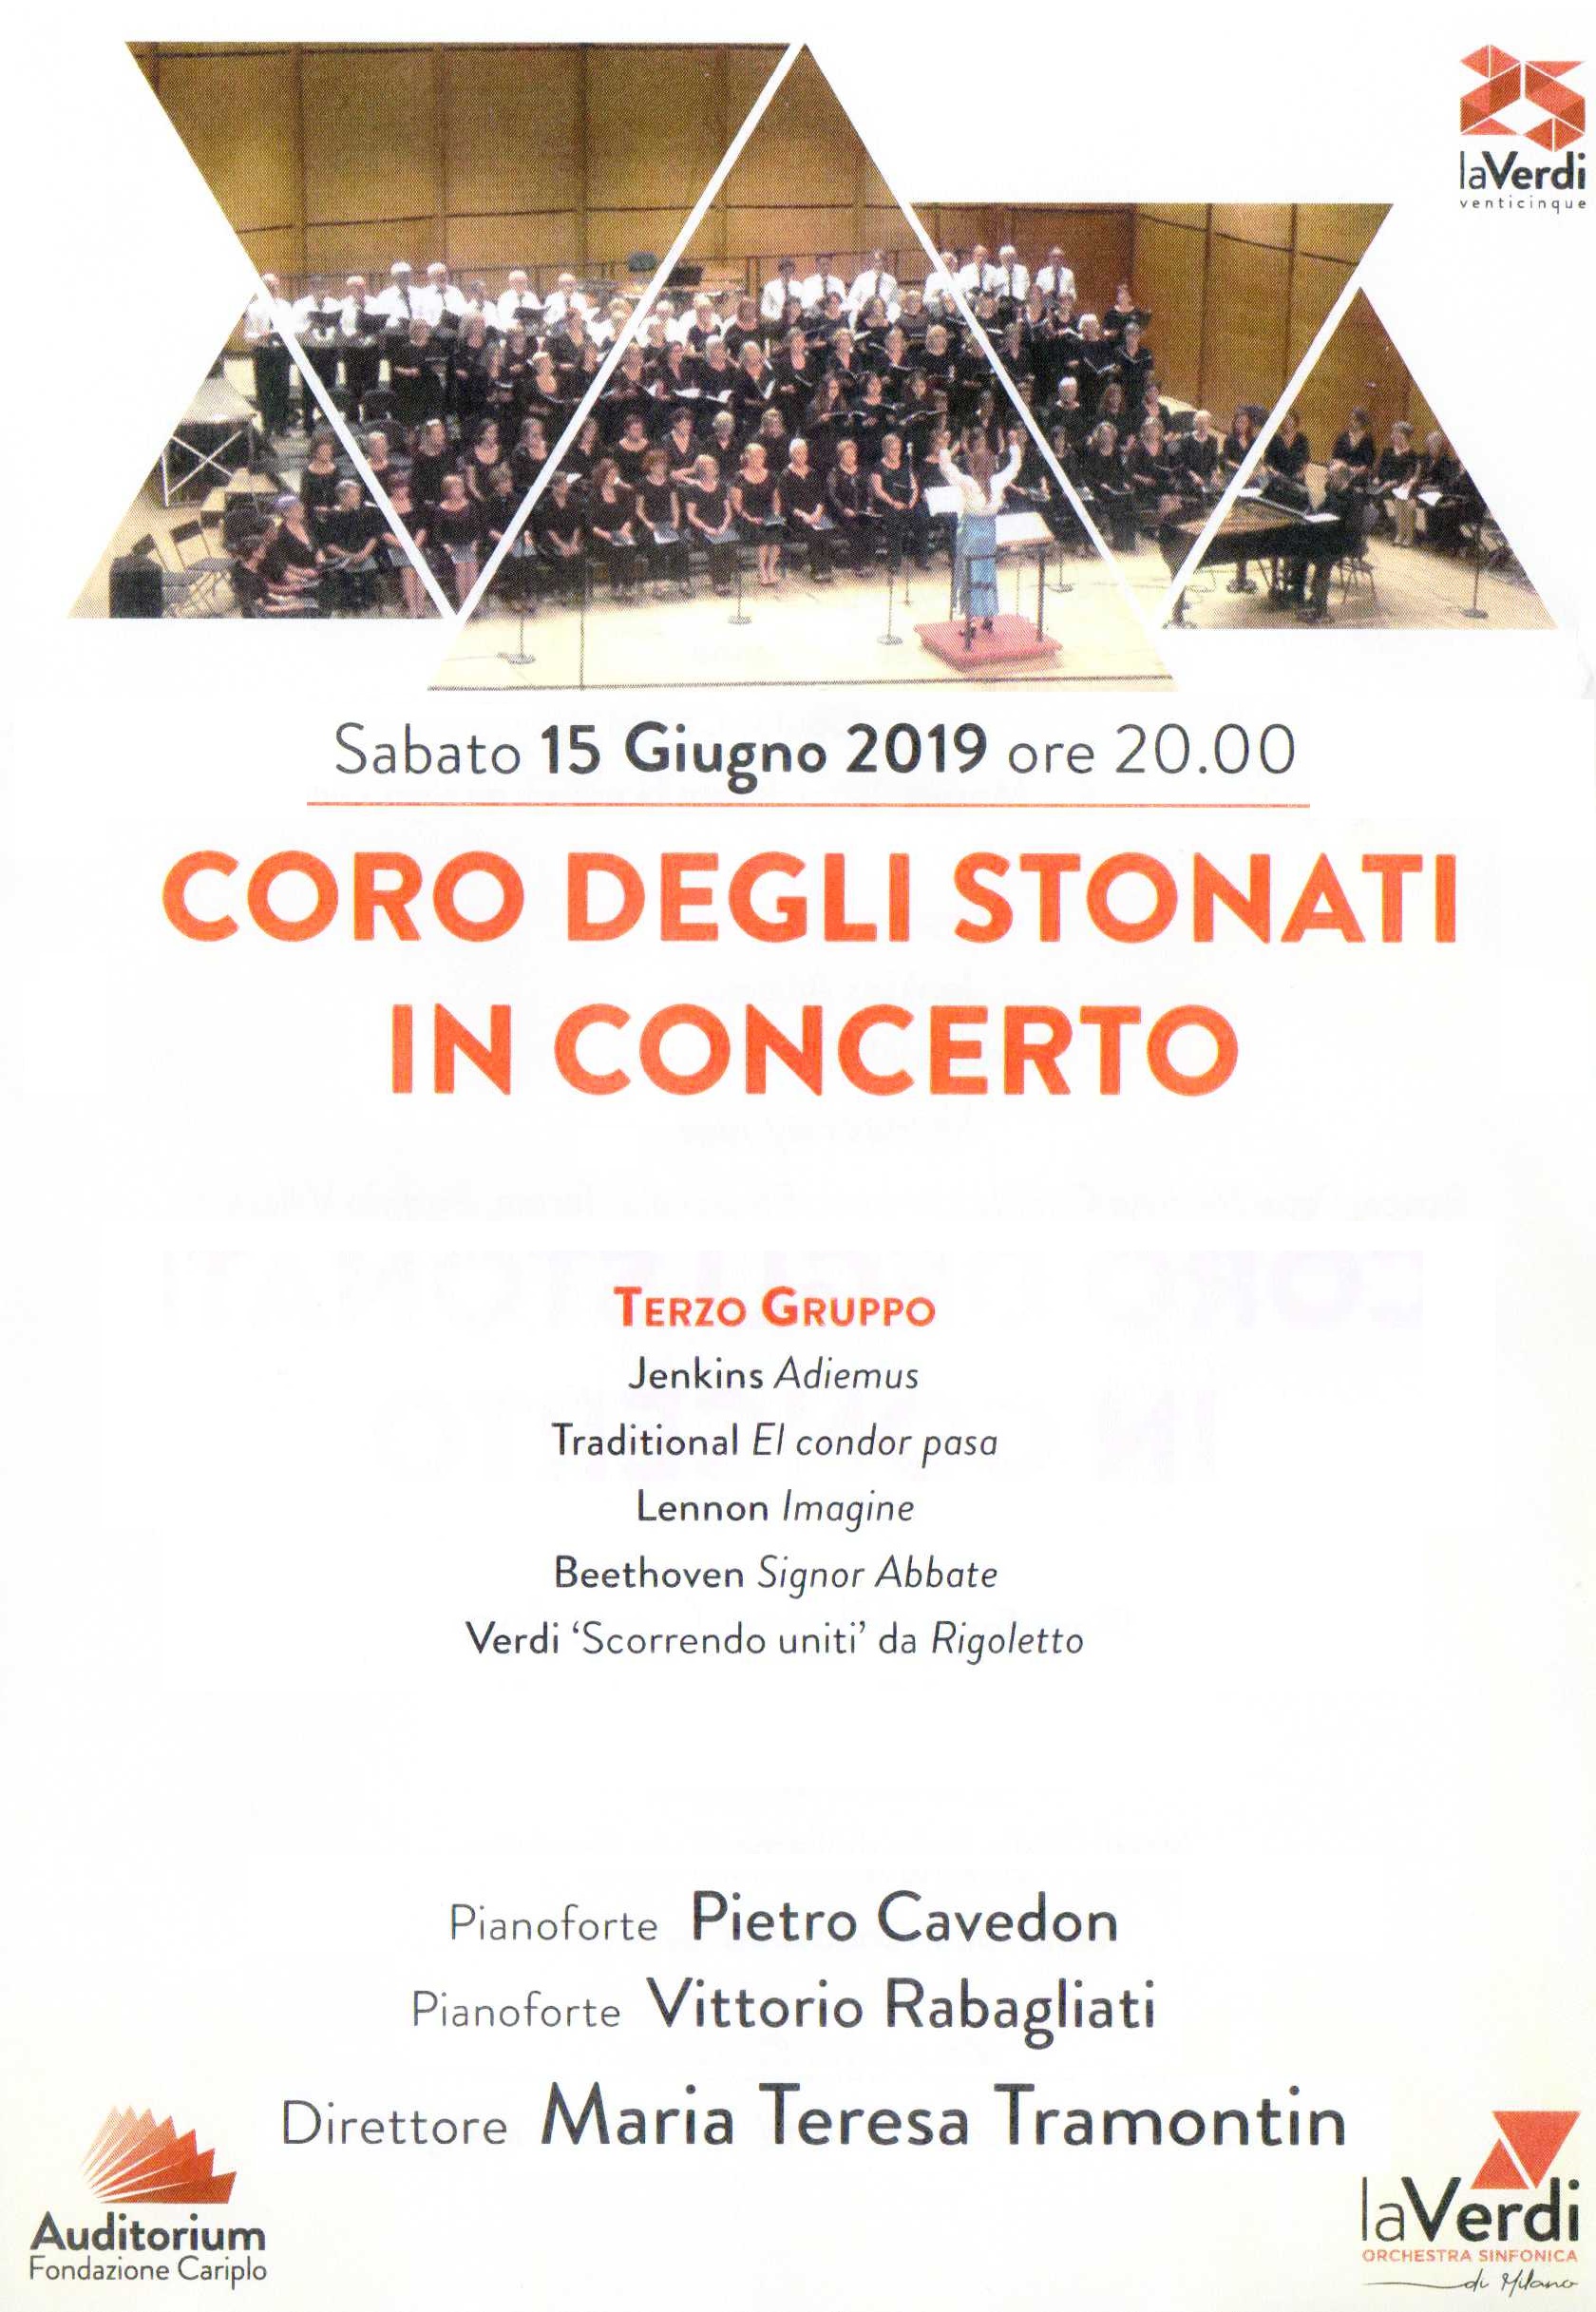 Concerto Coro laVerdi 2019 Stonati